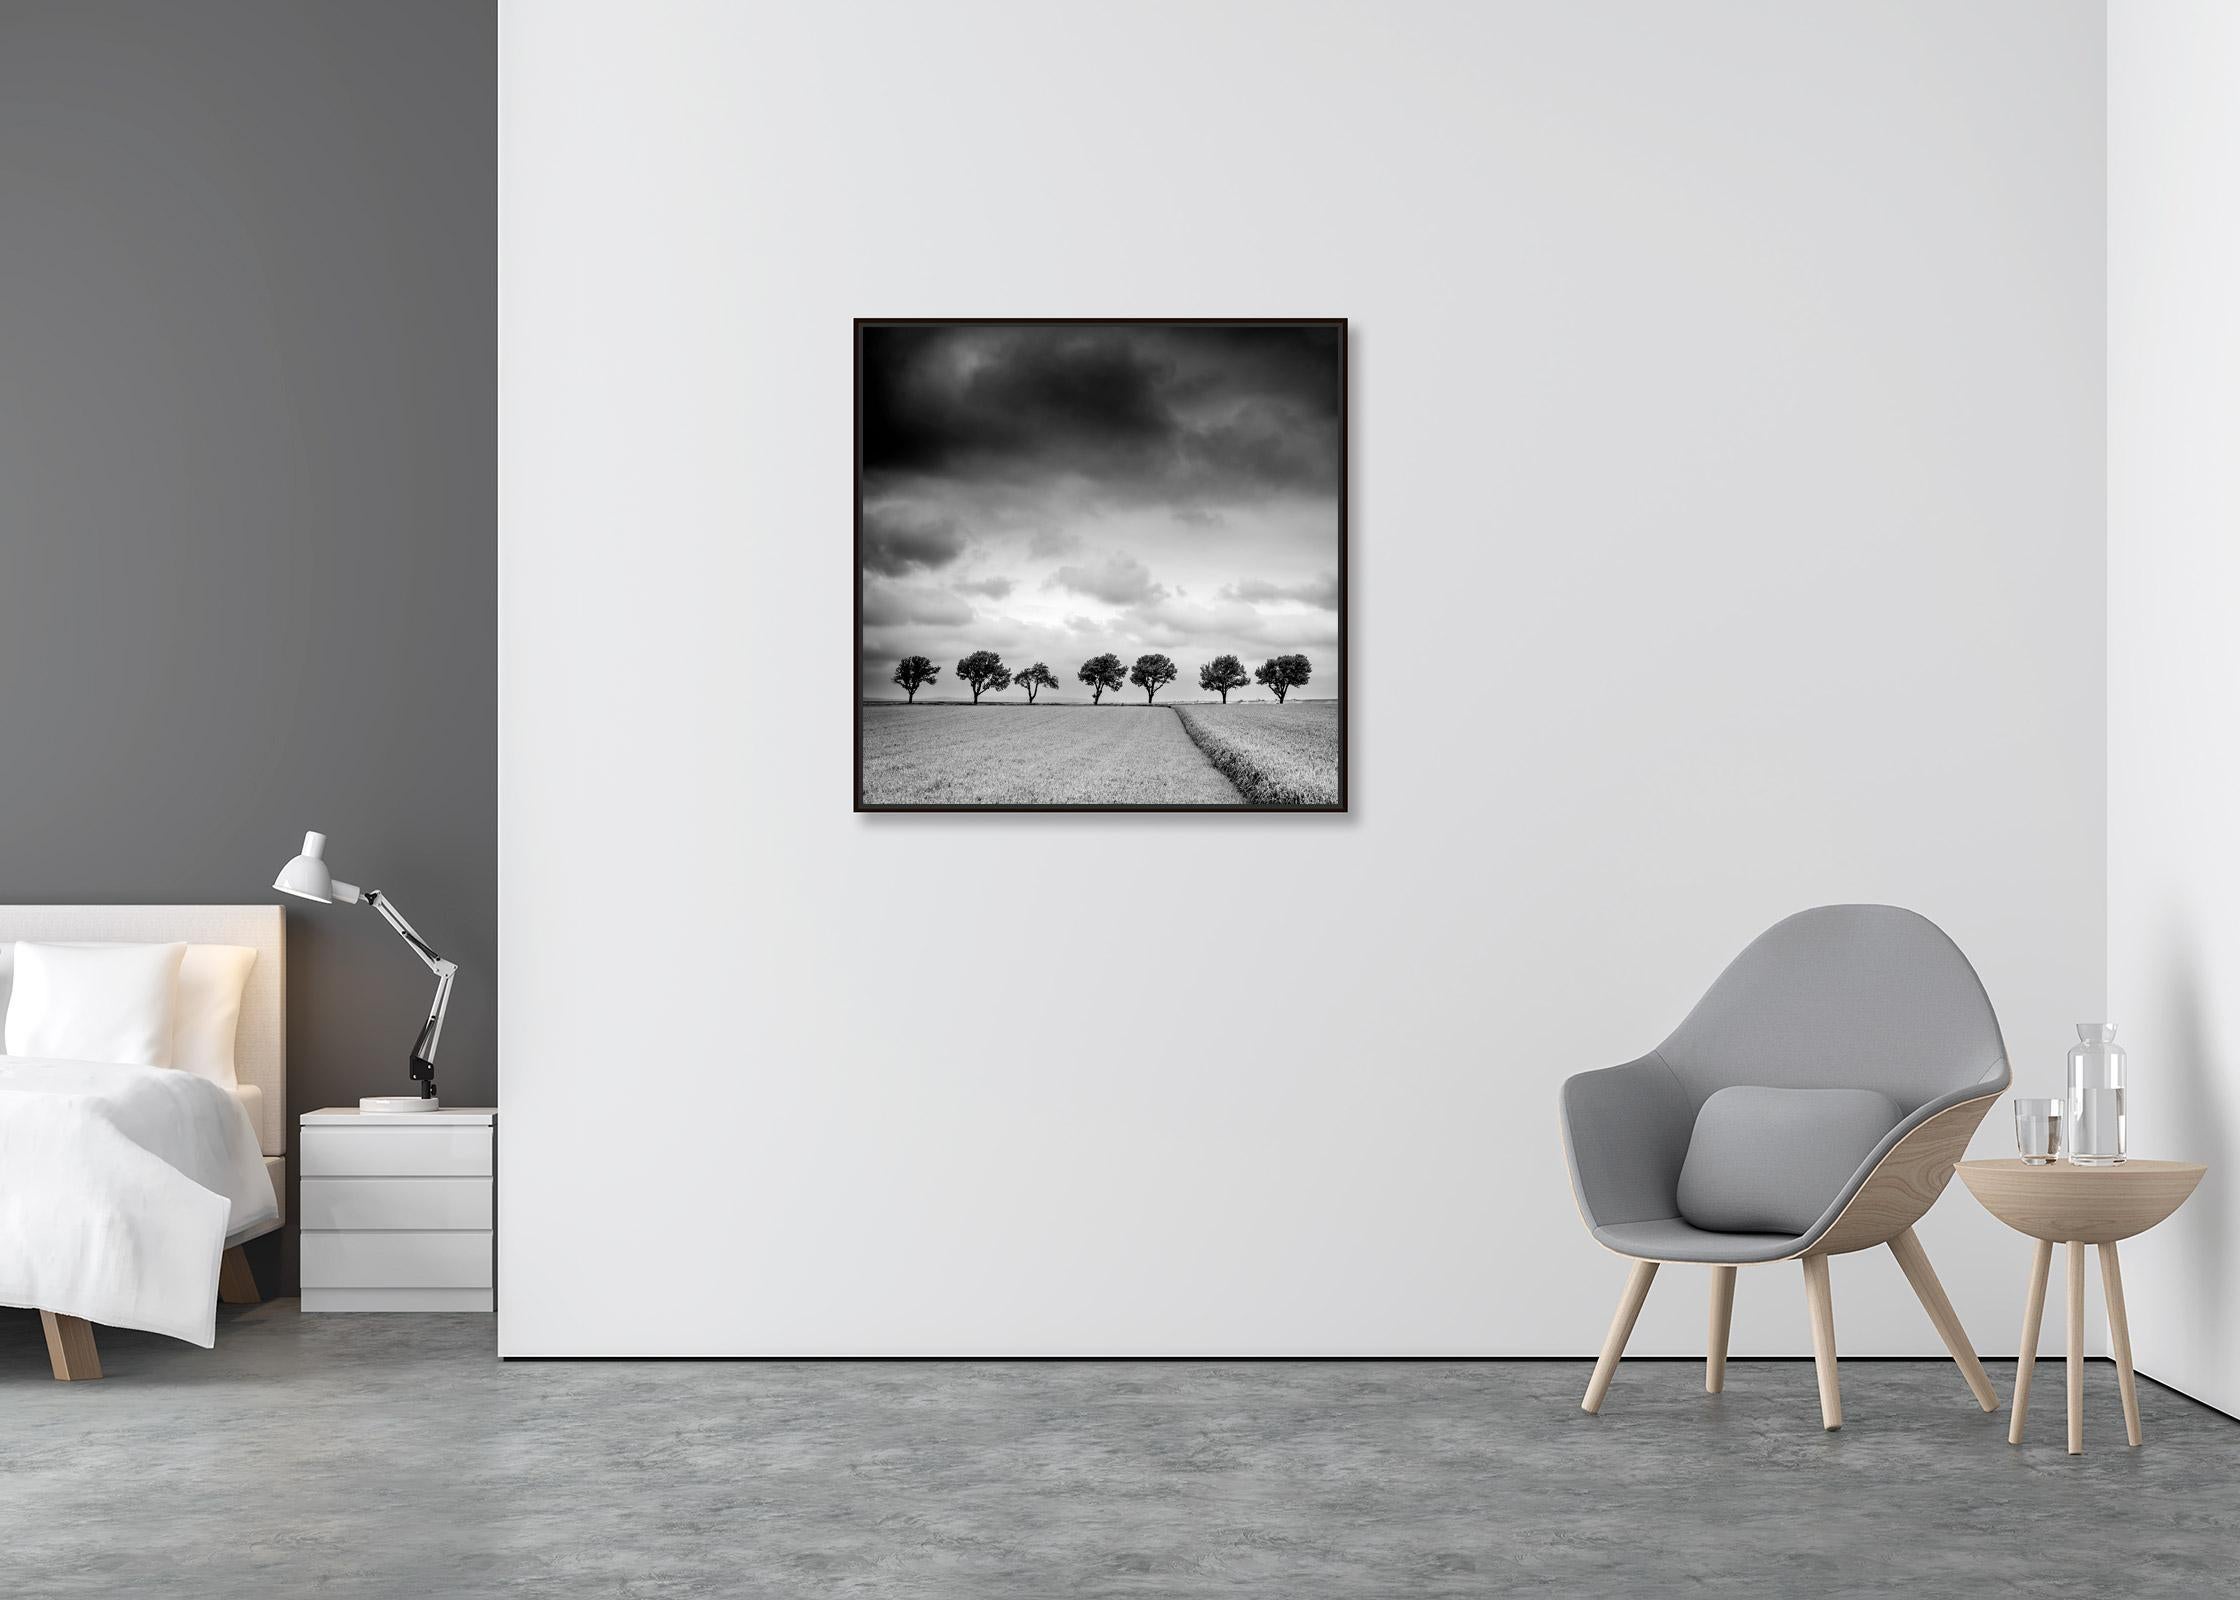 Bäume am Rande des Feldes, Wolken, Gewitter, Sturm, Schwarz-Weiß-Kunstlandschaftsfotografie (Zeitgenössisch), Print, von Gerald Berghammer